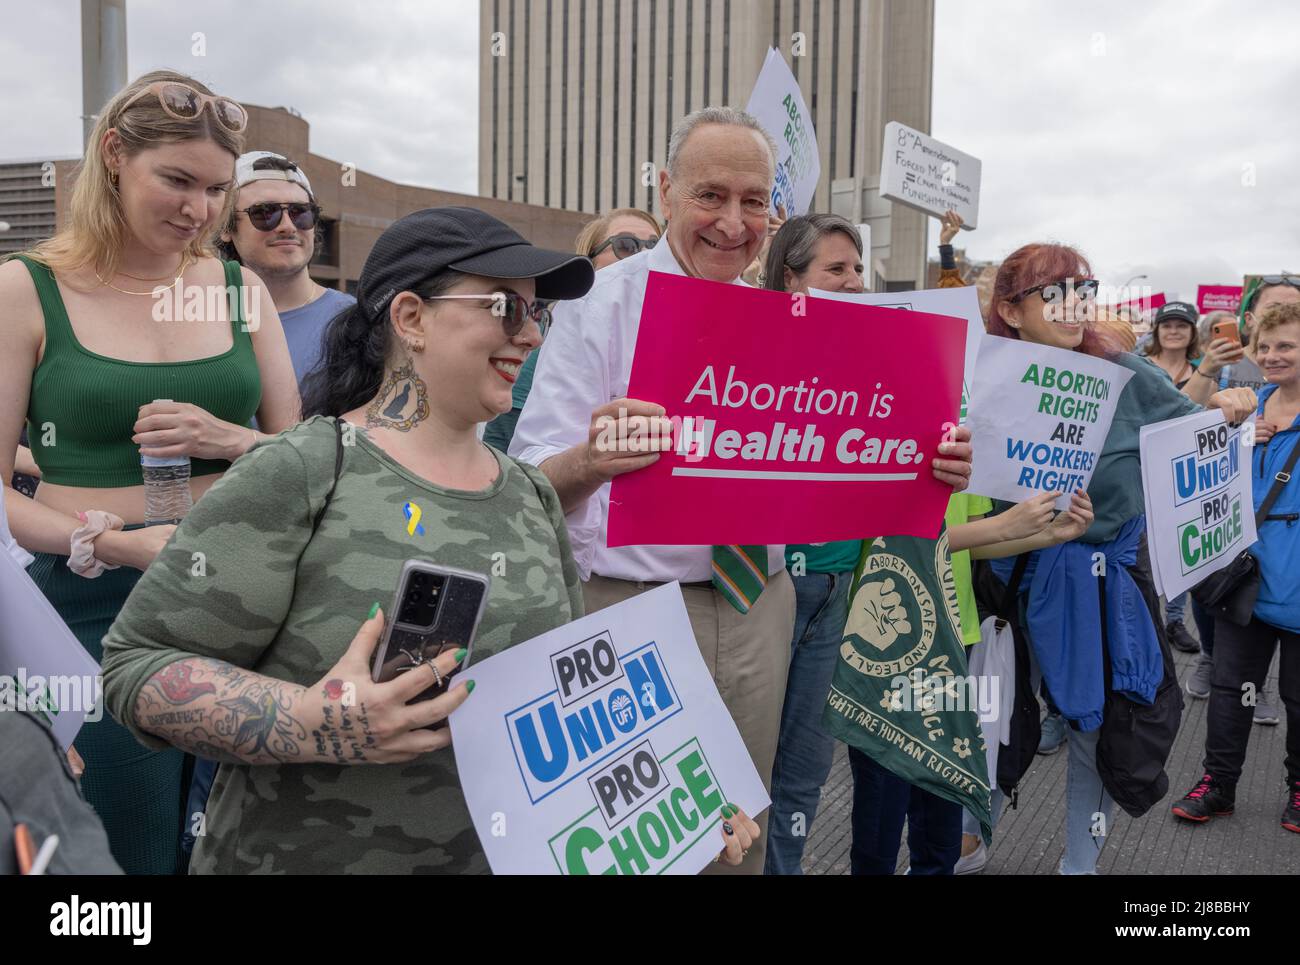 NUEVA YORK, N.Y. – 14 de mayo de 2022: El líder de la mayoría del Senado de los Estados Unidos, Chuck Schumer, se marcha por el Puente de Brooklyn durante una protesta por los derechos al aborto. Foto de stock